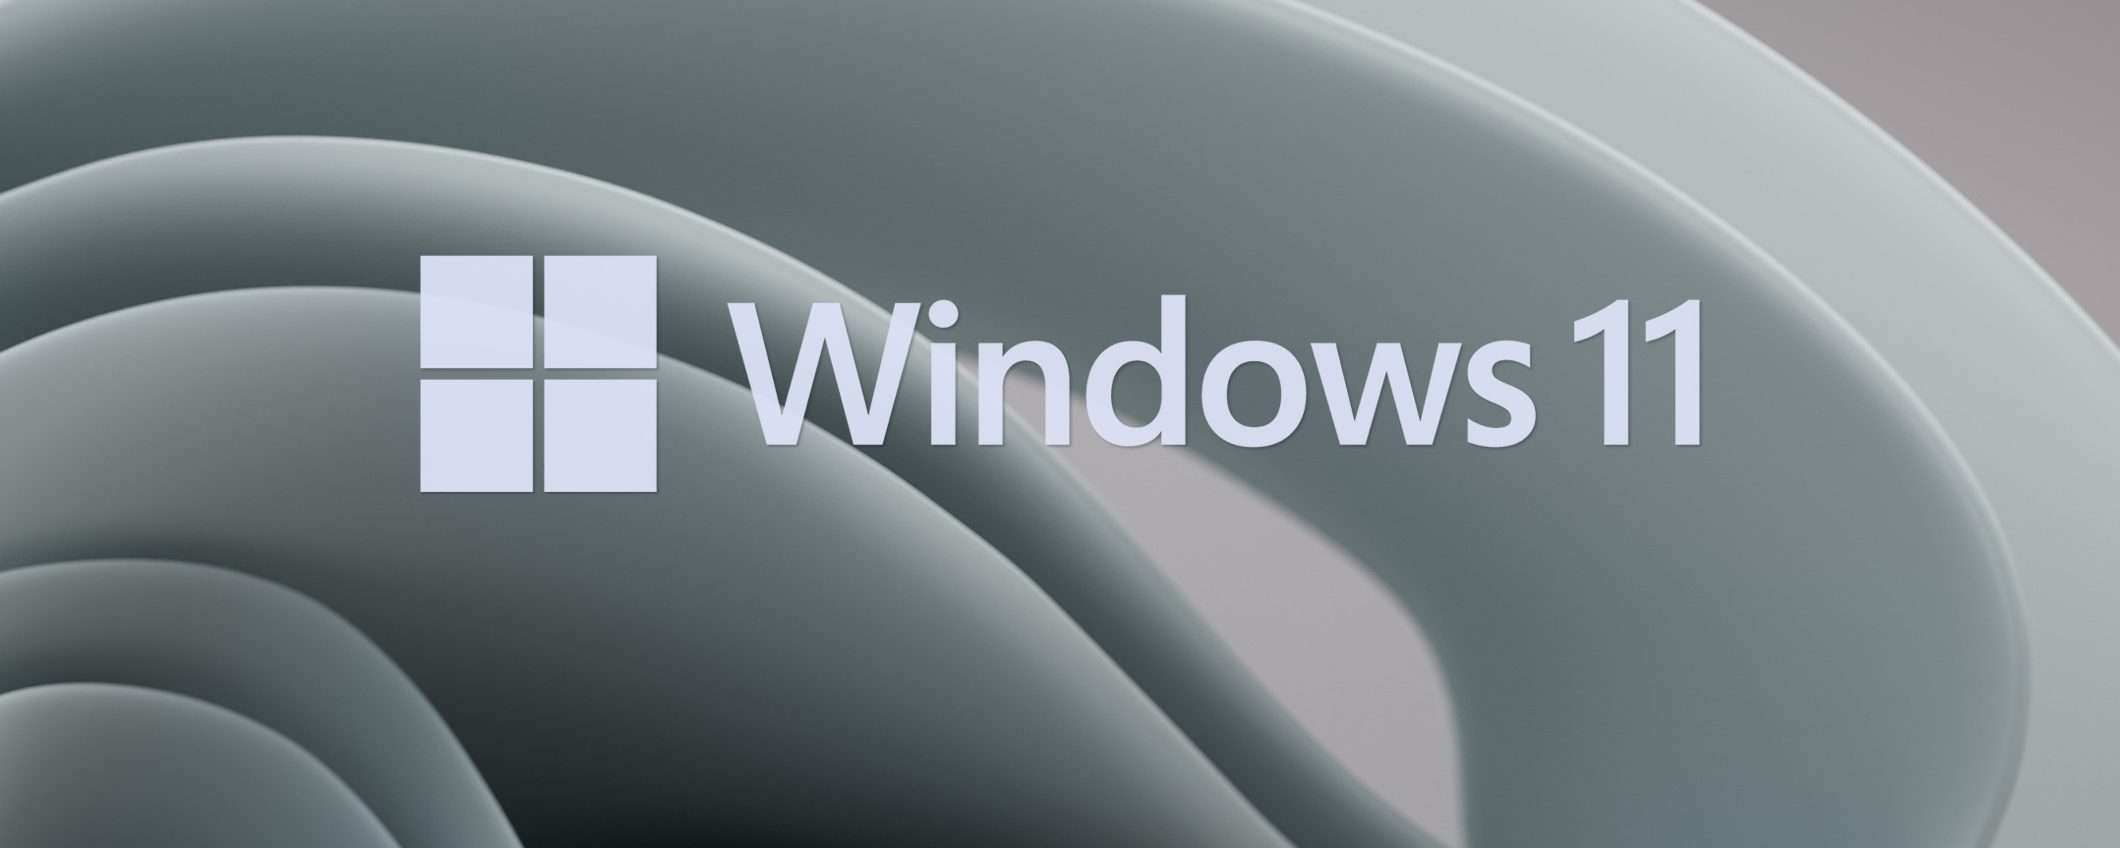 Windows 11 e 10: download bloccati in Russia